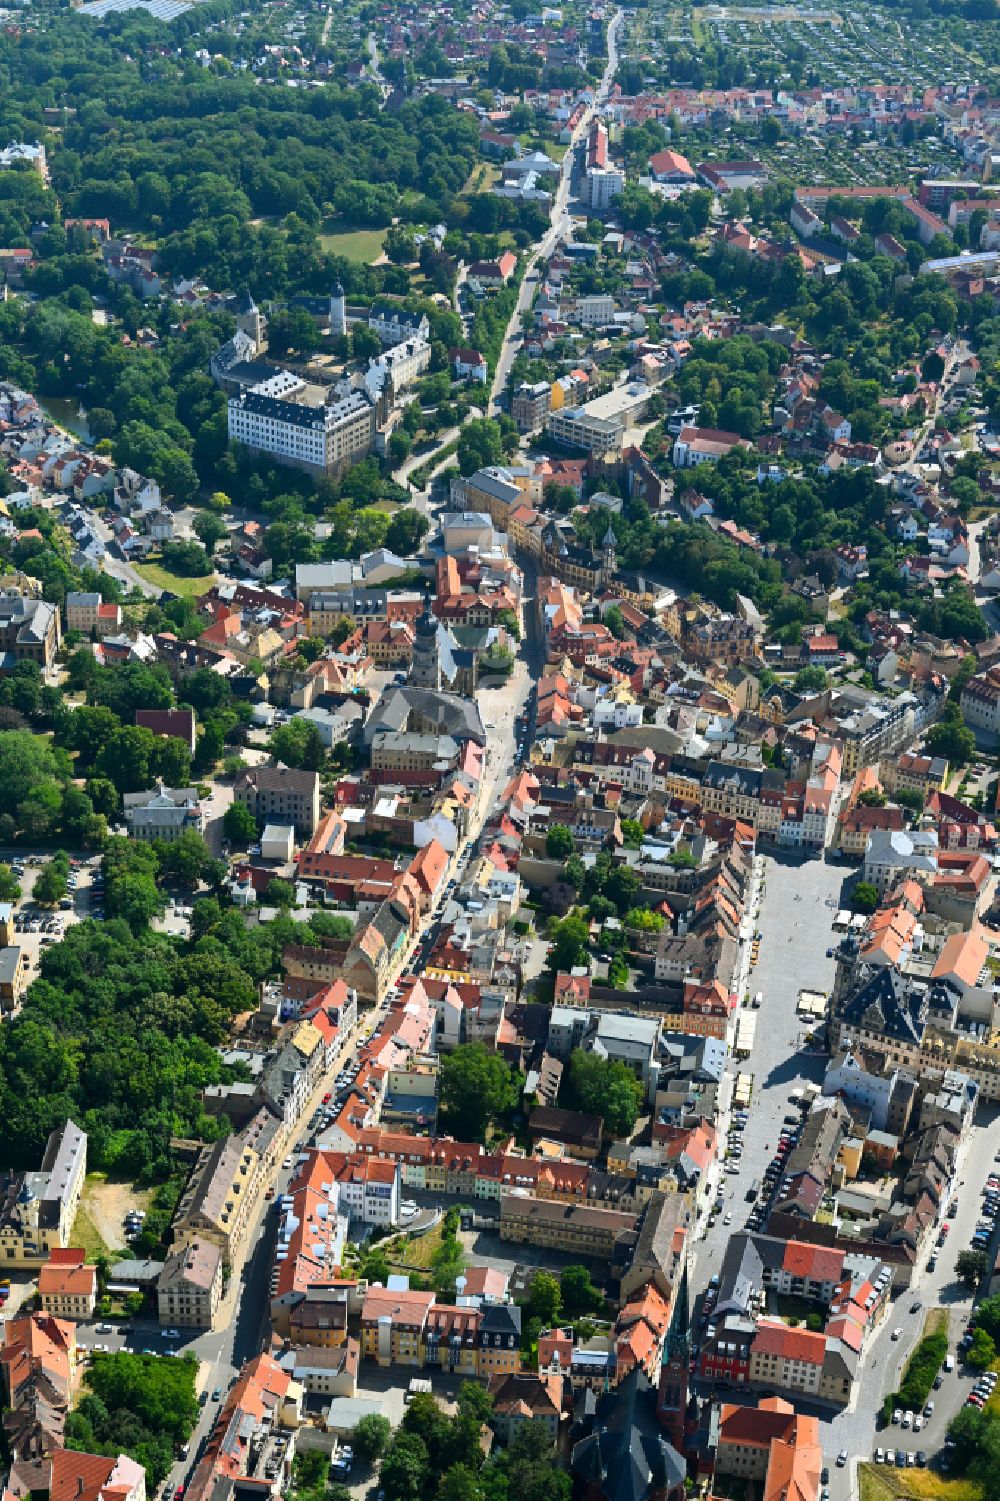 Altenburg von oben - Stadtzentrum im Innenstadtbereich in Altenburg im Bundesland Thüringen, Deutschland